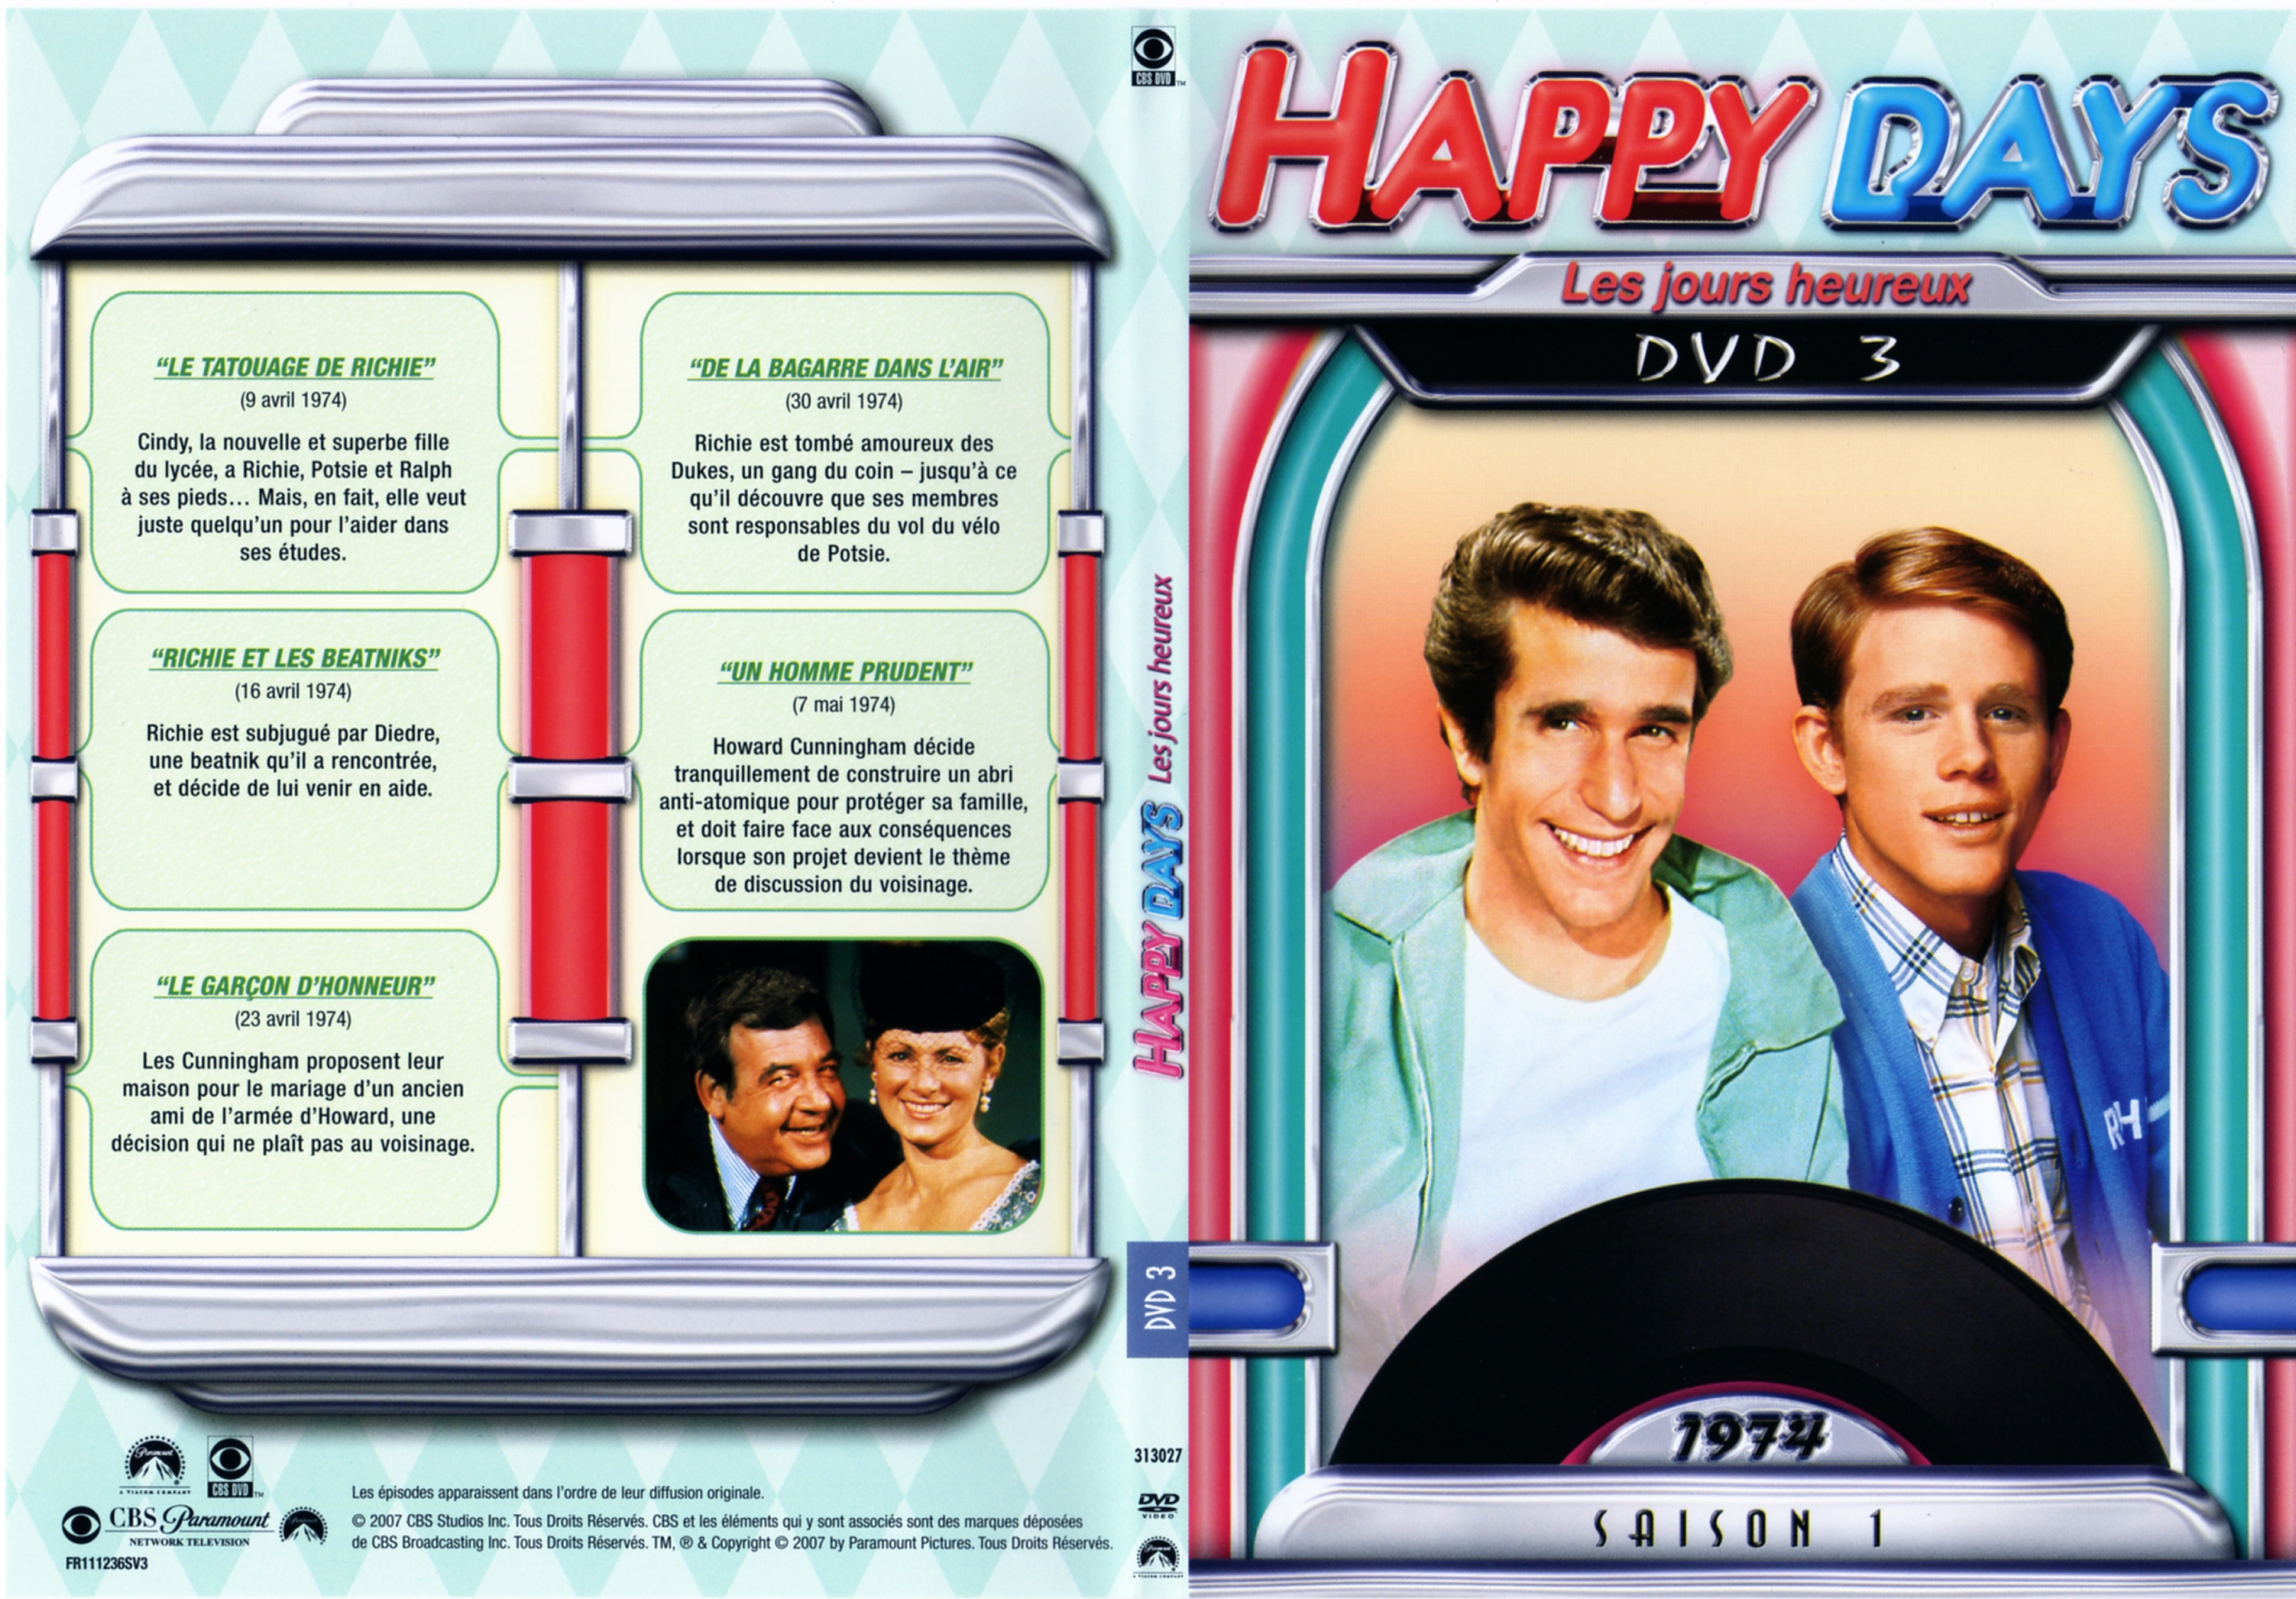 Jaquette DVD Happy days Saison 01 DVD 3